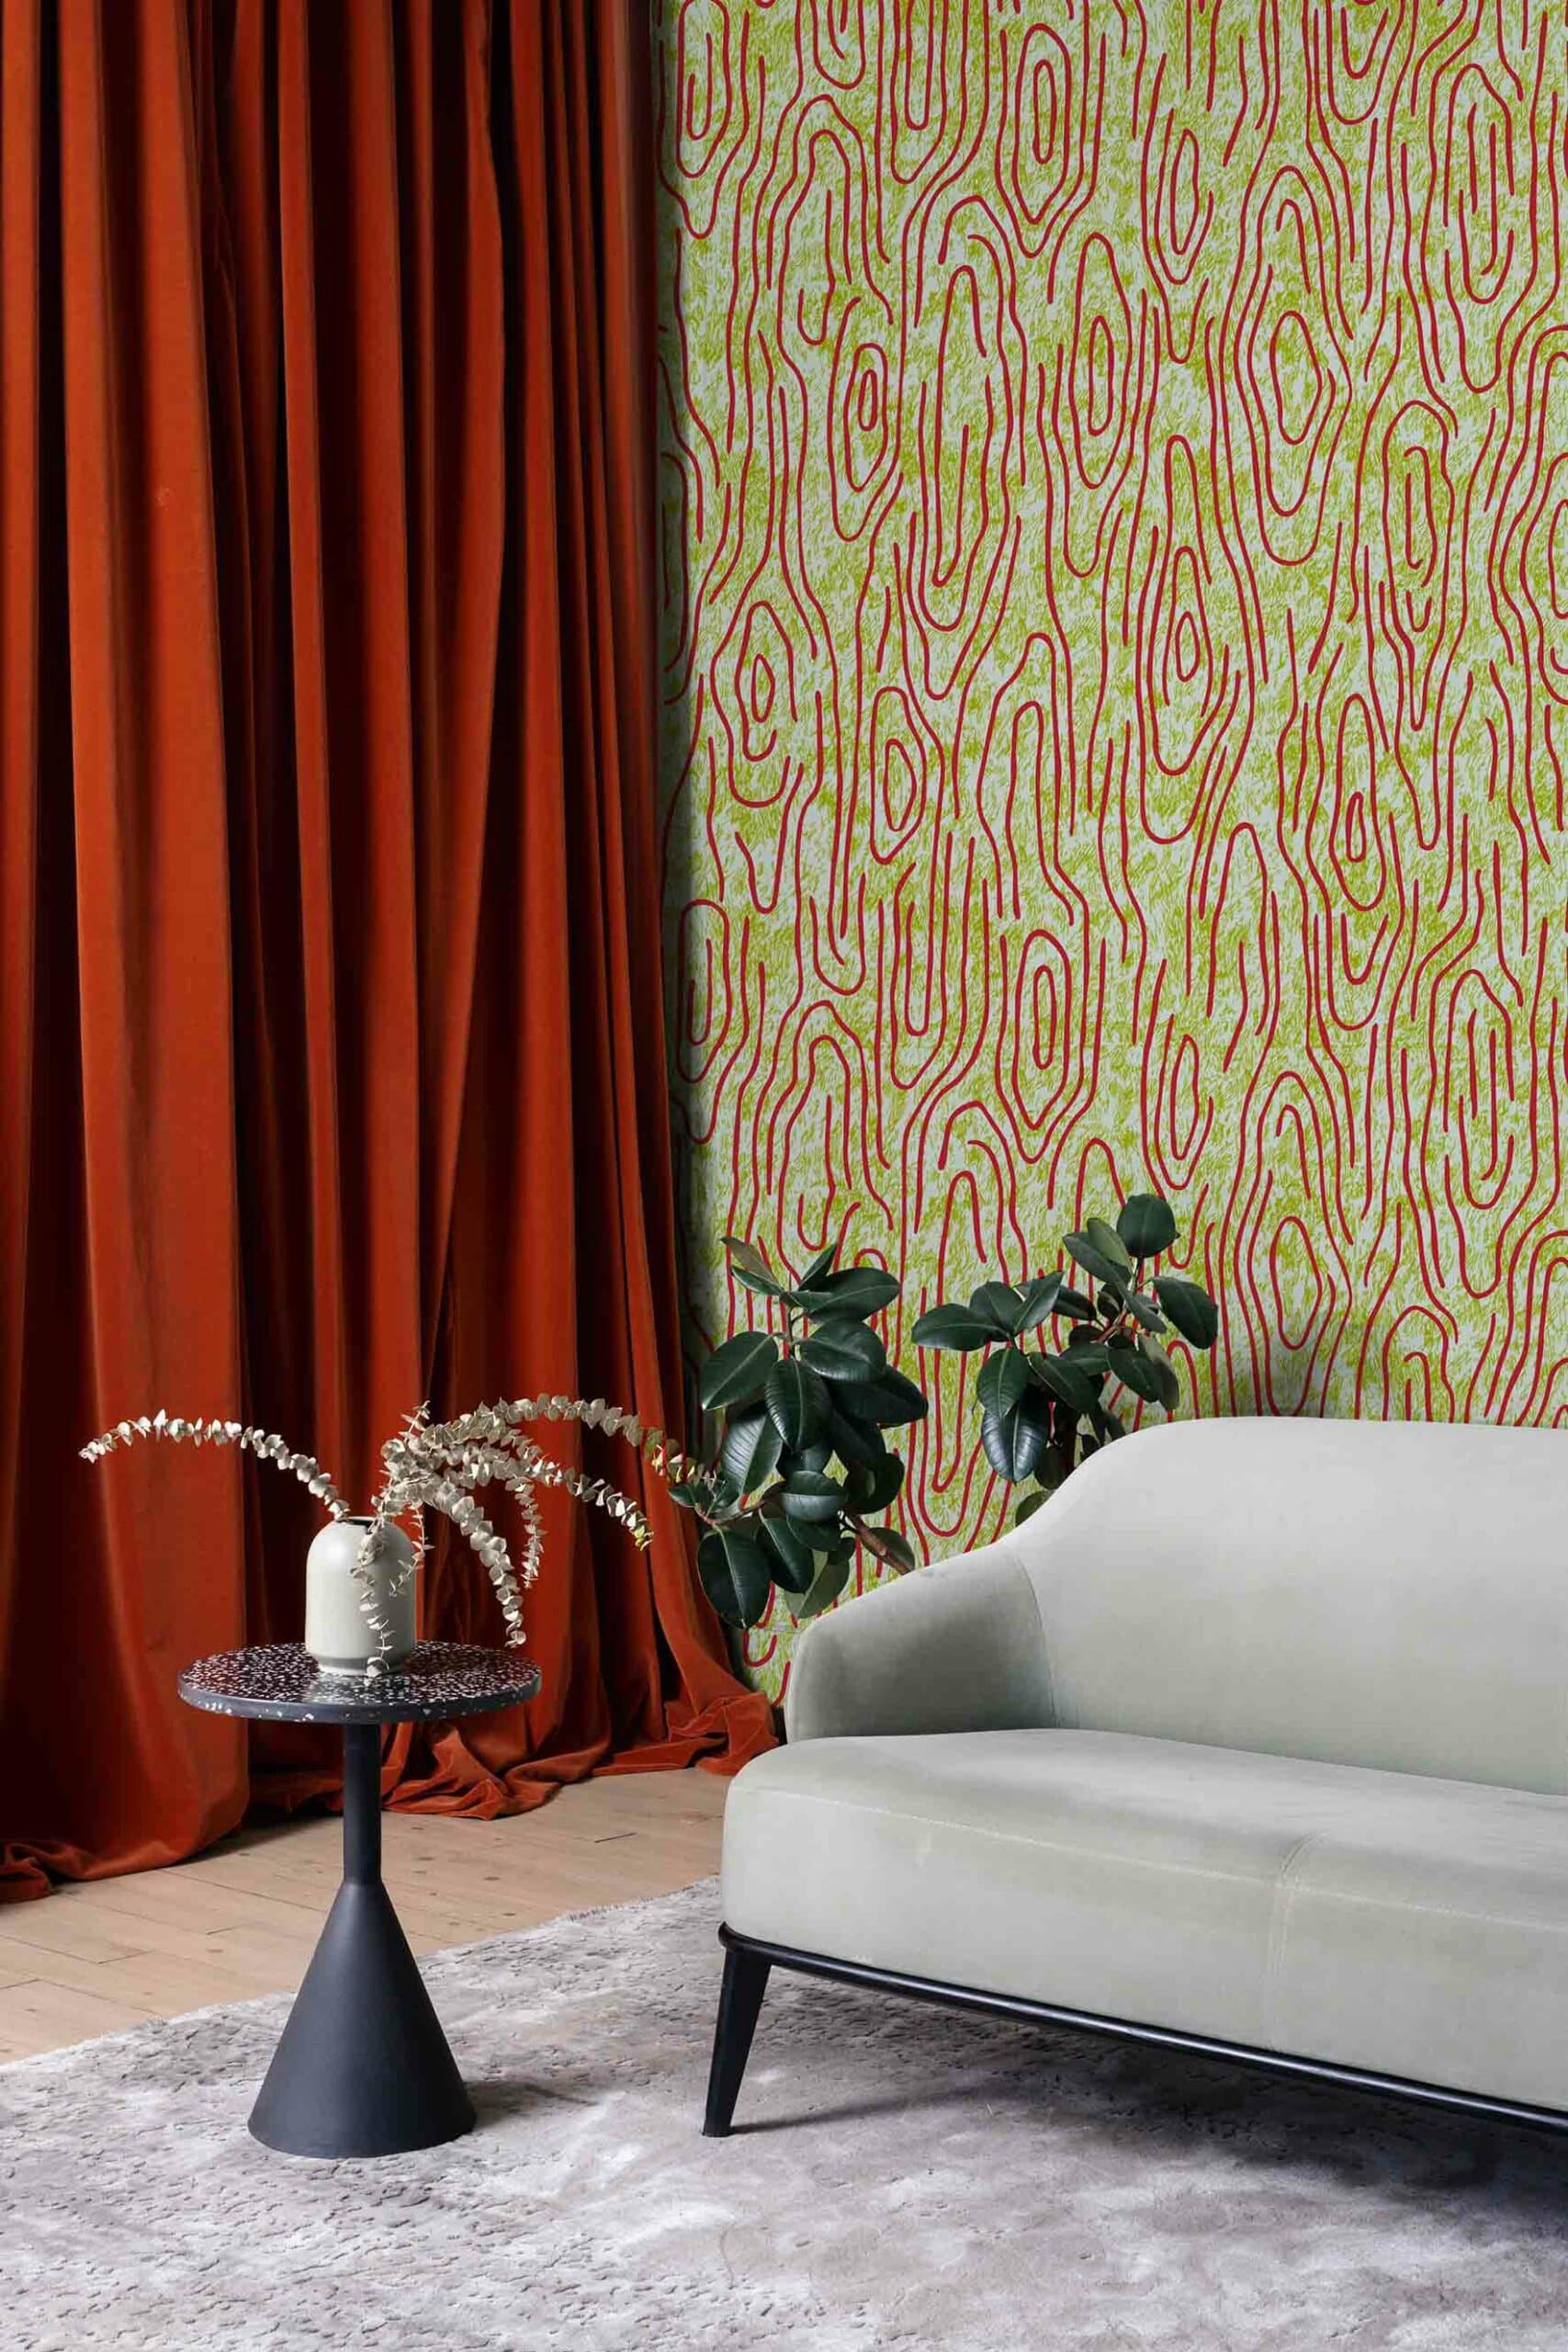 MaVoix-wallpaper-Vampa-incendio-by-Studio-Lievito-pattern-Collezione-Essenziali-back-couch-scaled